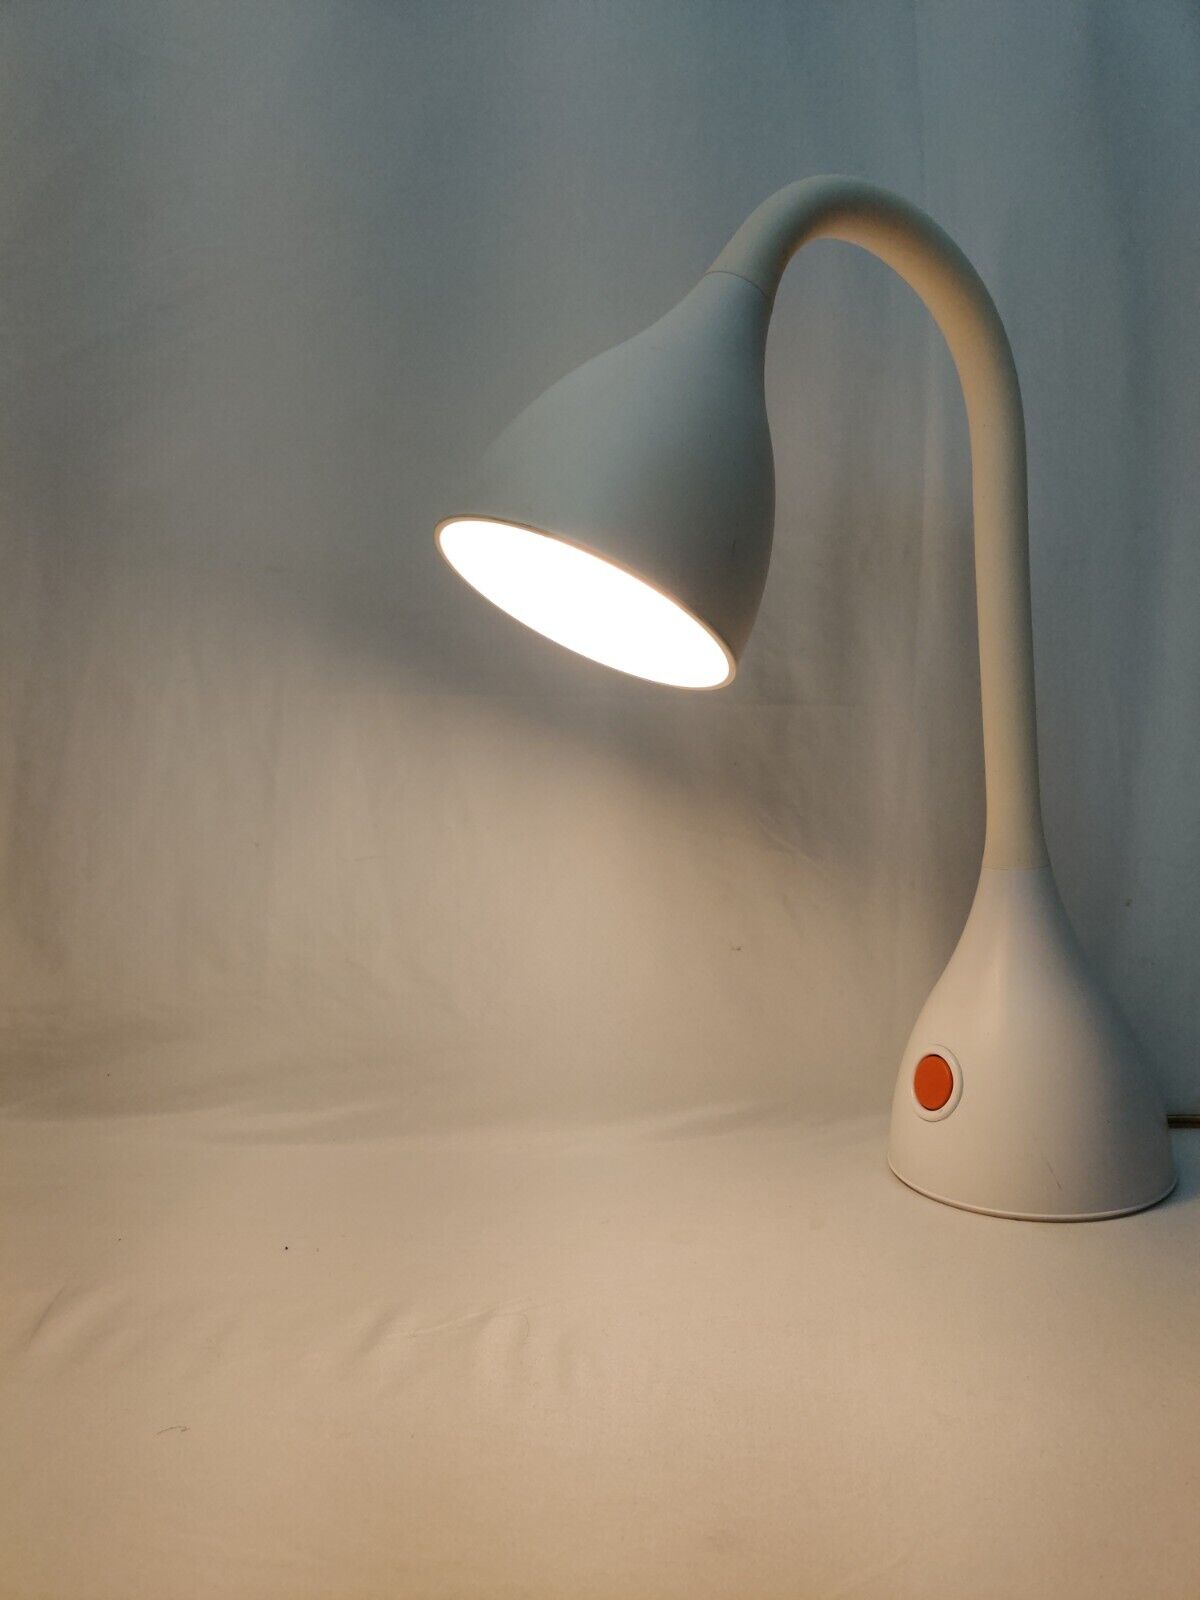 MICHAEL GRAVES POST MODERN GOOSENECK LIGHT LAMP Vintage White Multi-Directional